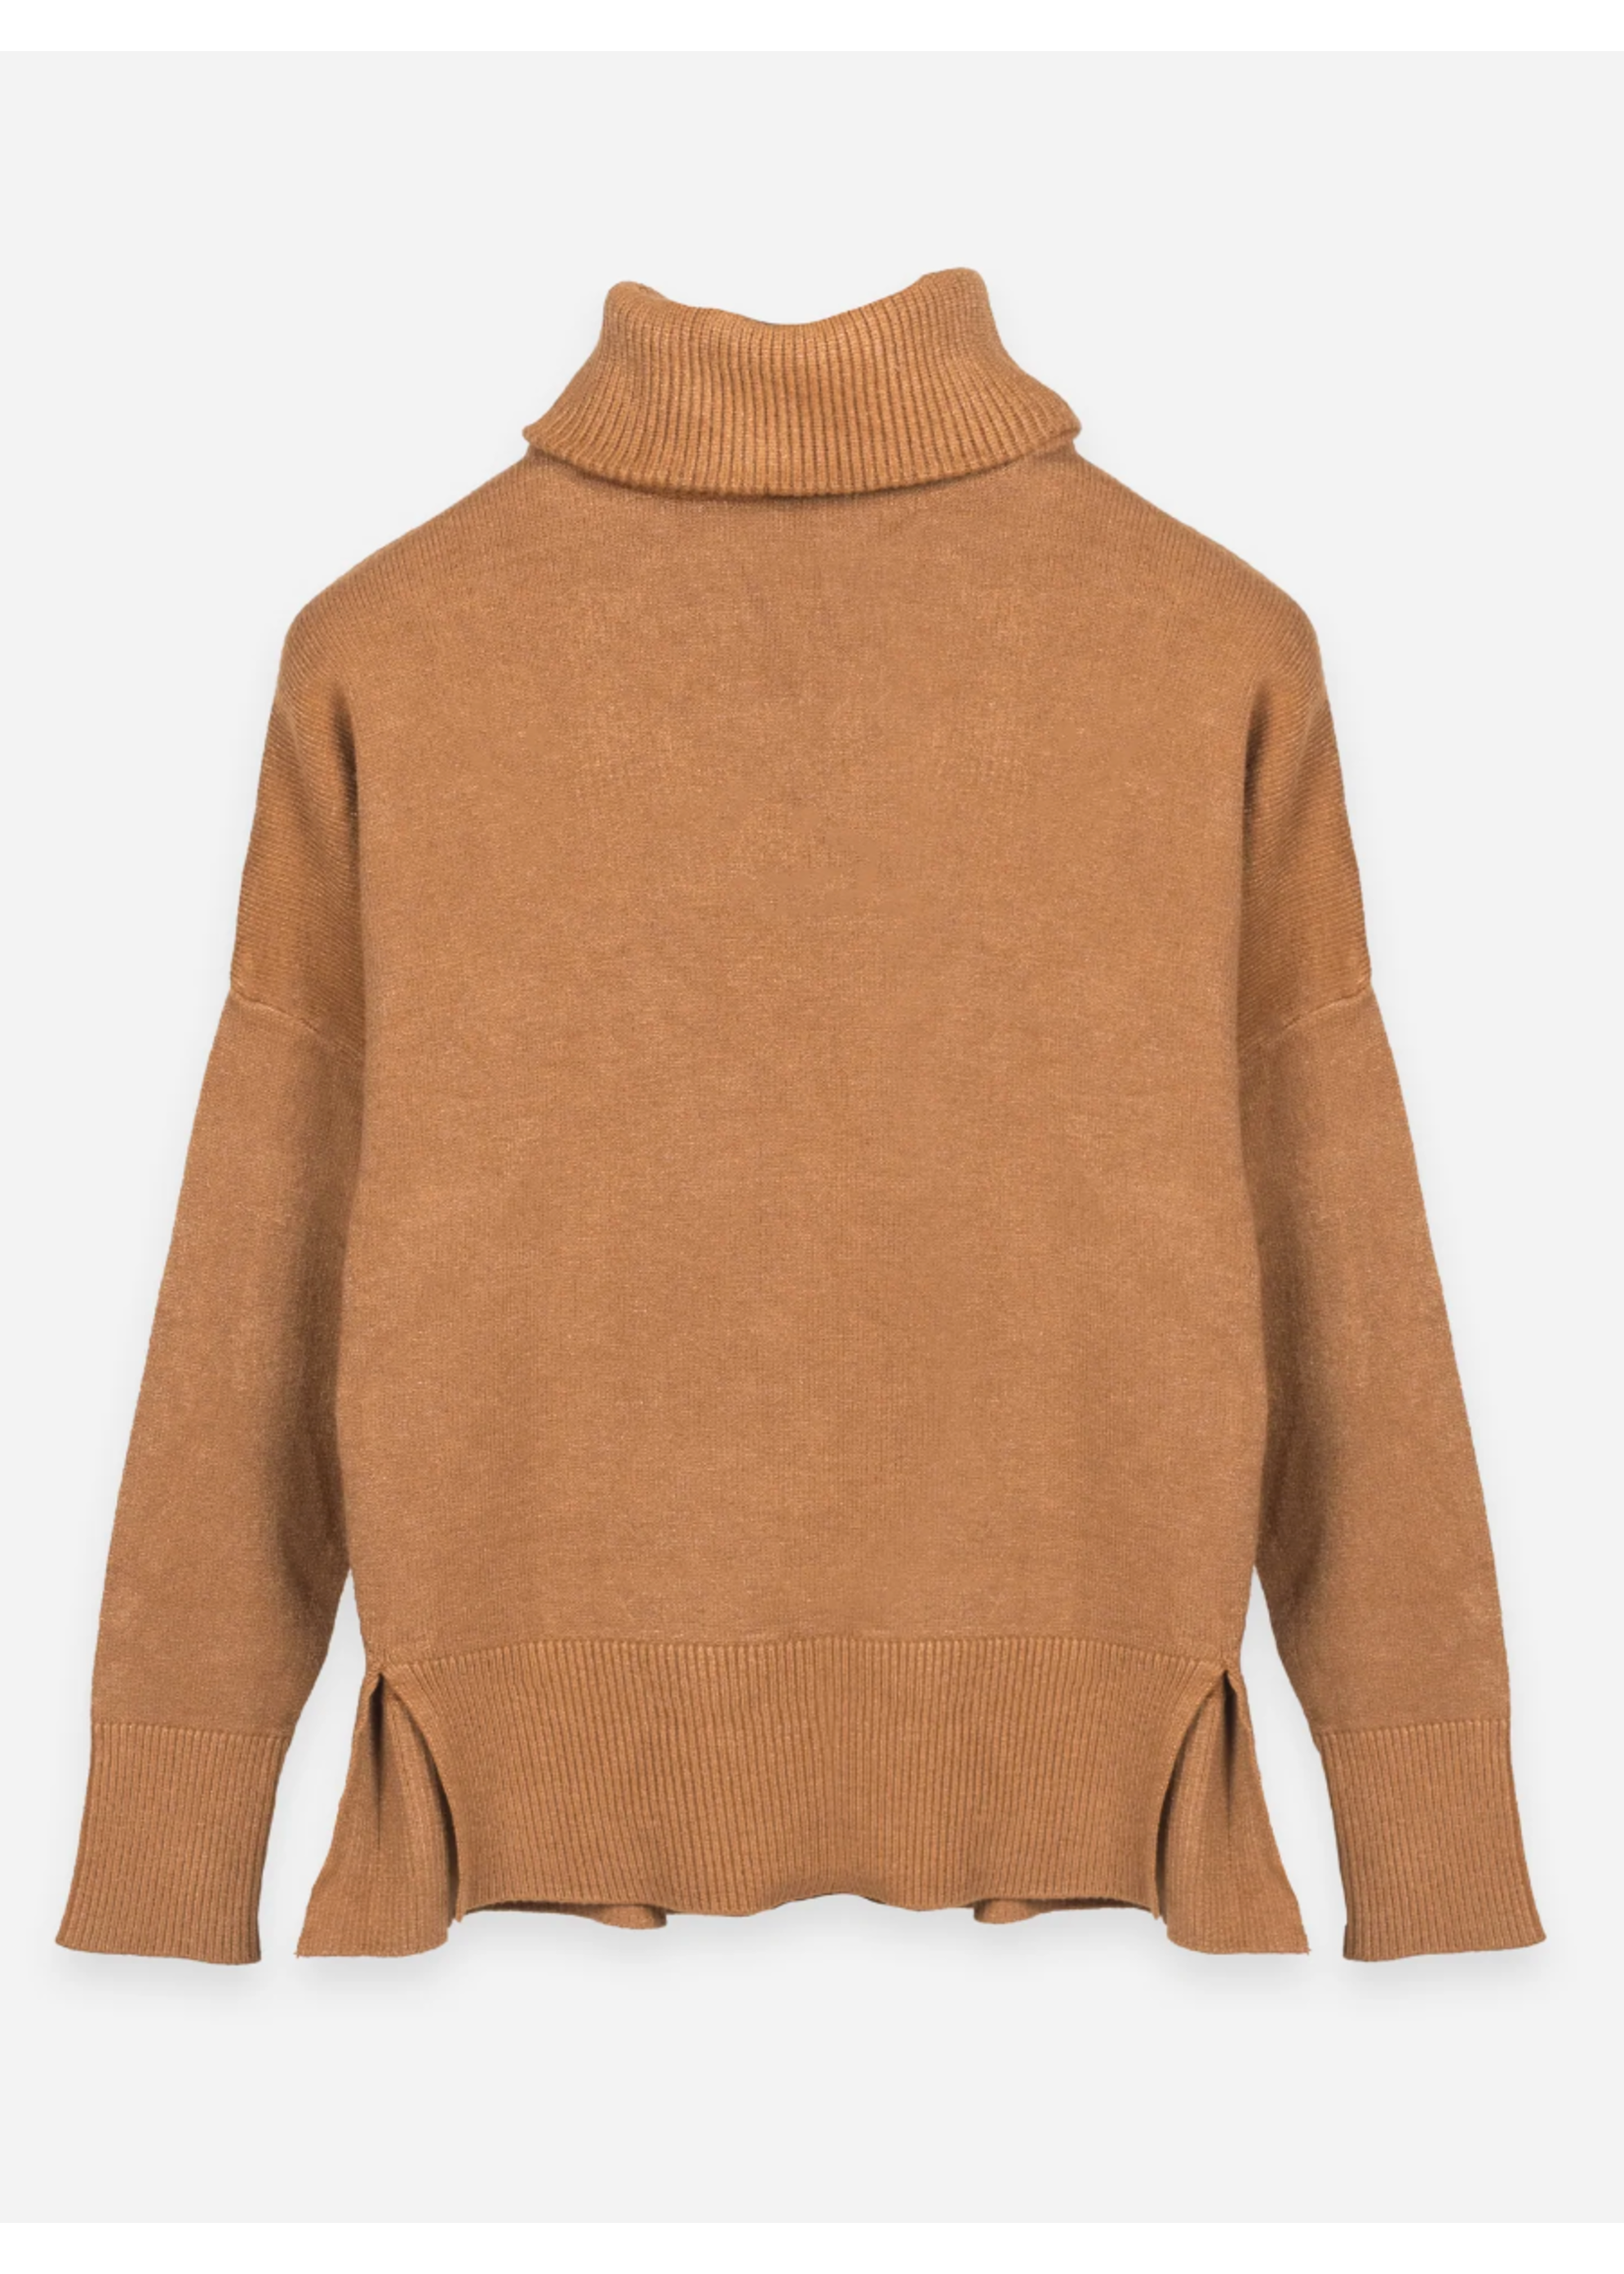 Deluc Trento Turtleneck Sweater